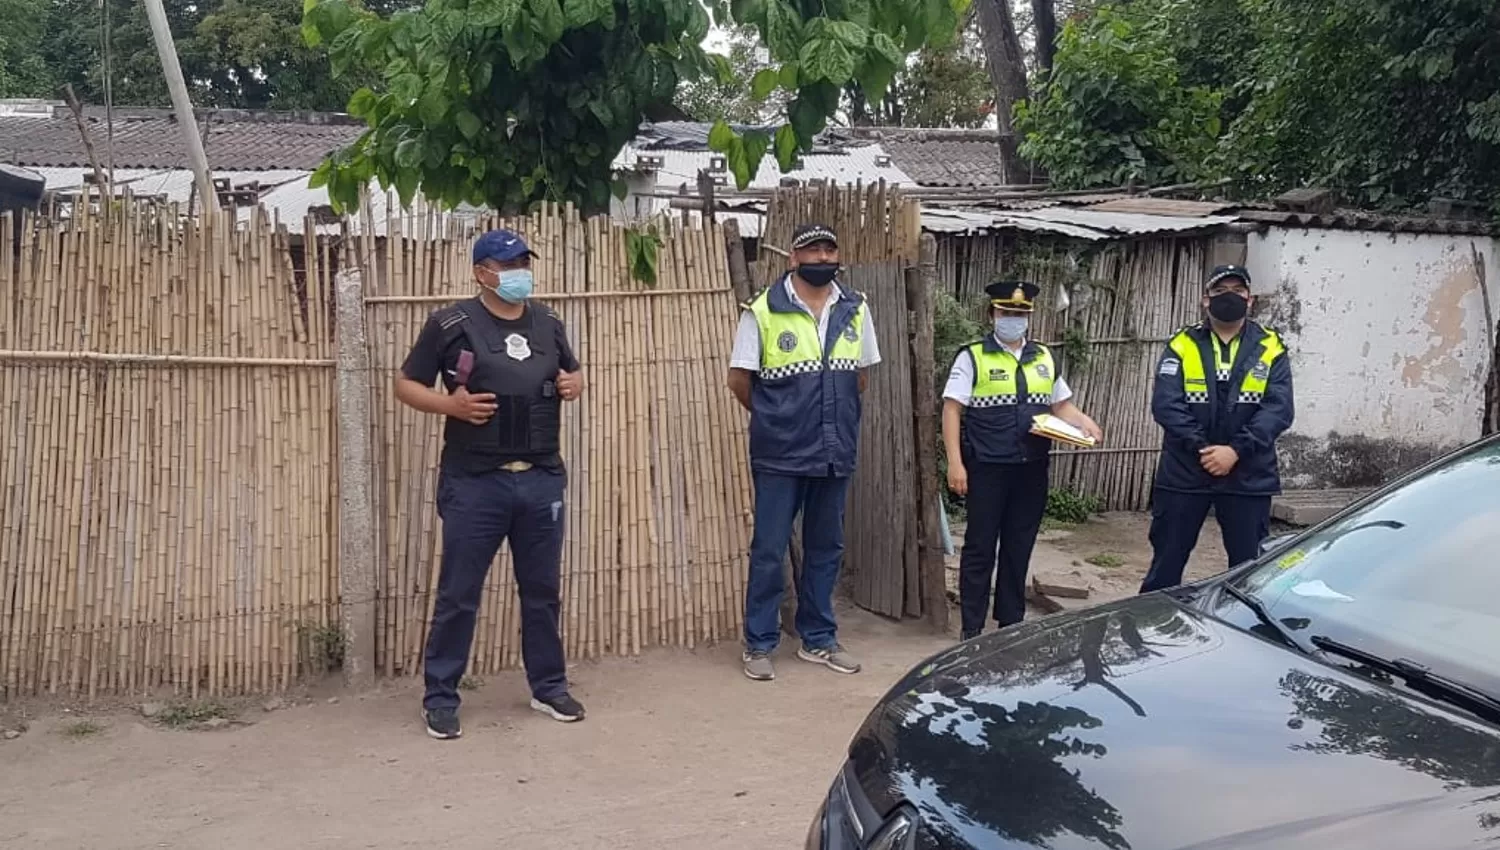 ALLANAMIENTOS. La Policía registró los domicilios de familiares y amigos del sospechoso, en las ciudades de Monteros y de Famaillá.